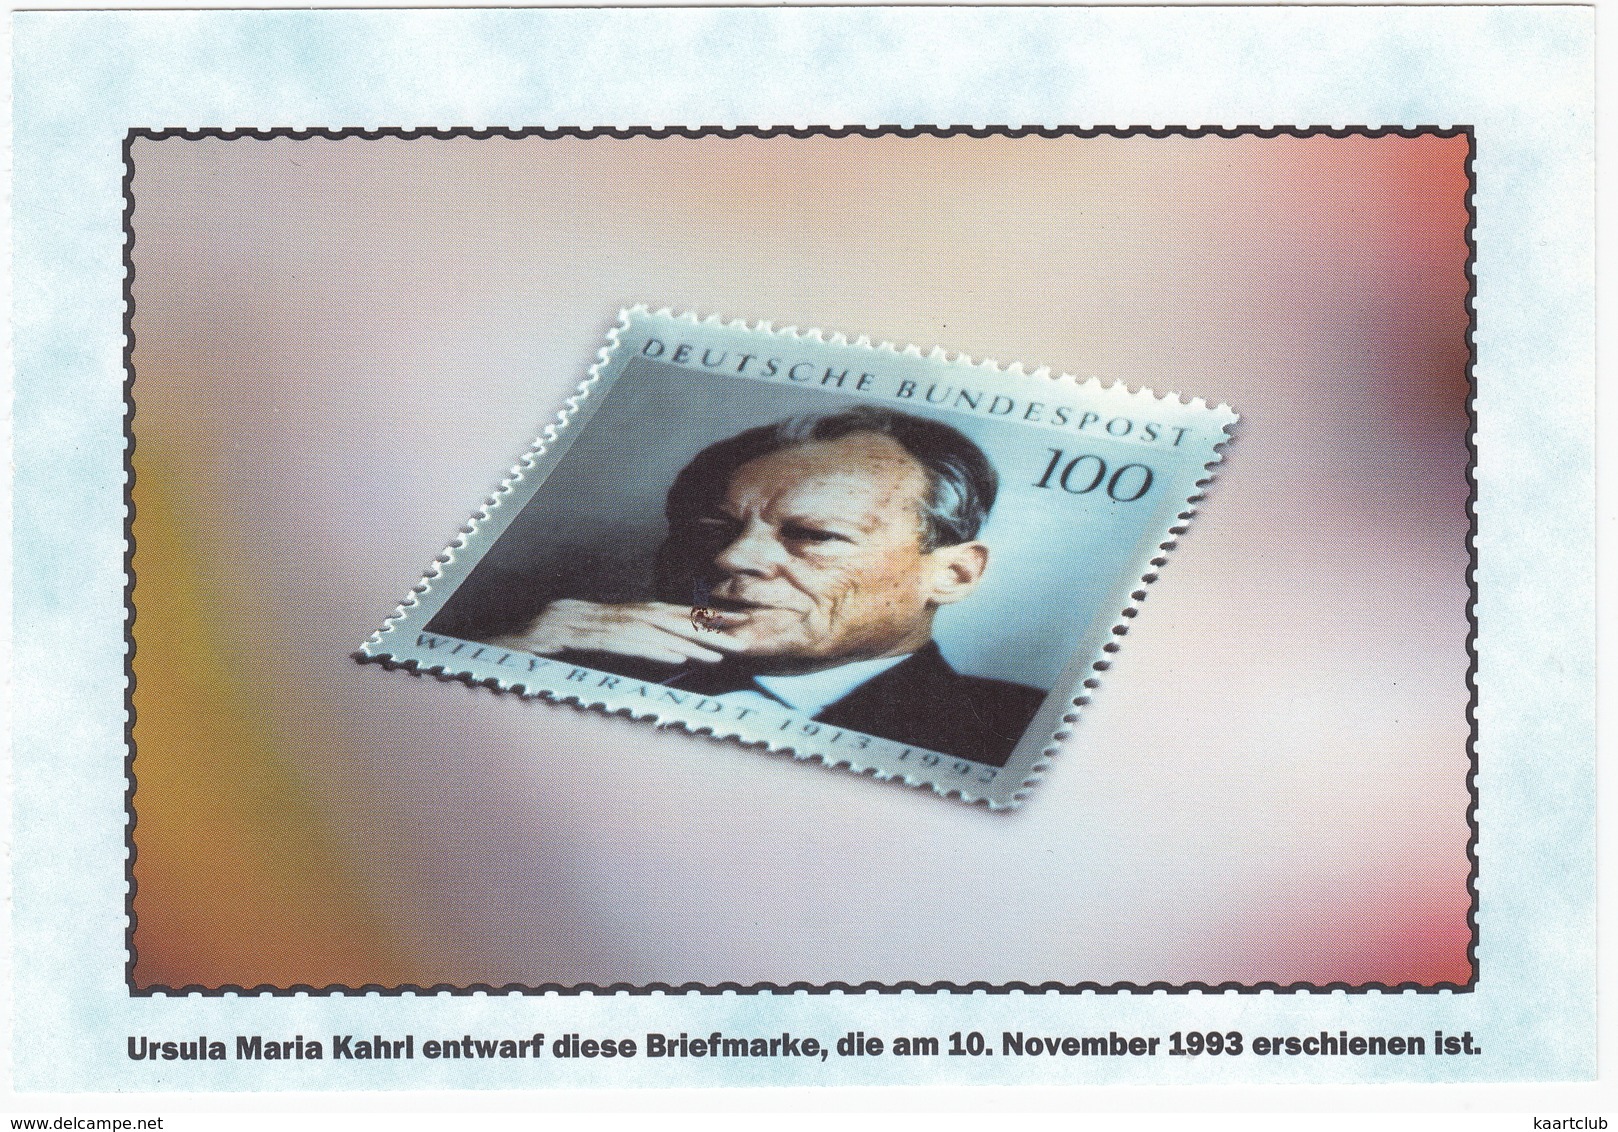 100 Pf. Briefmarke - Ursula M. Kahrl Entwarf Diese Briefmarke, Die Am 16.November 1993 Erschienen Ist - Sammler-Service - Briefmarken (Abbildungen)